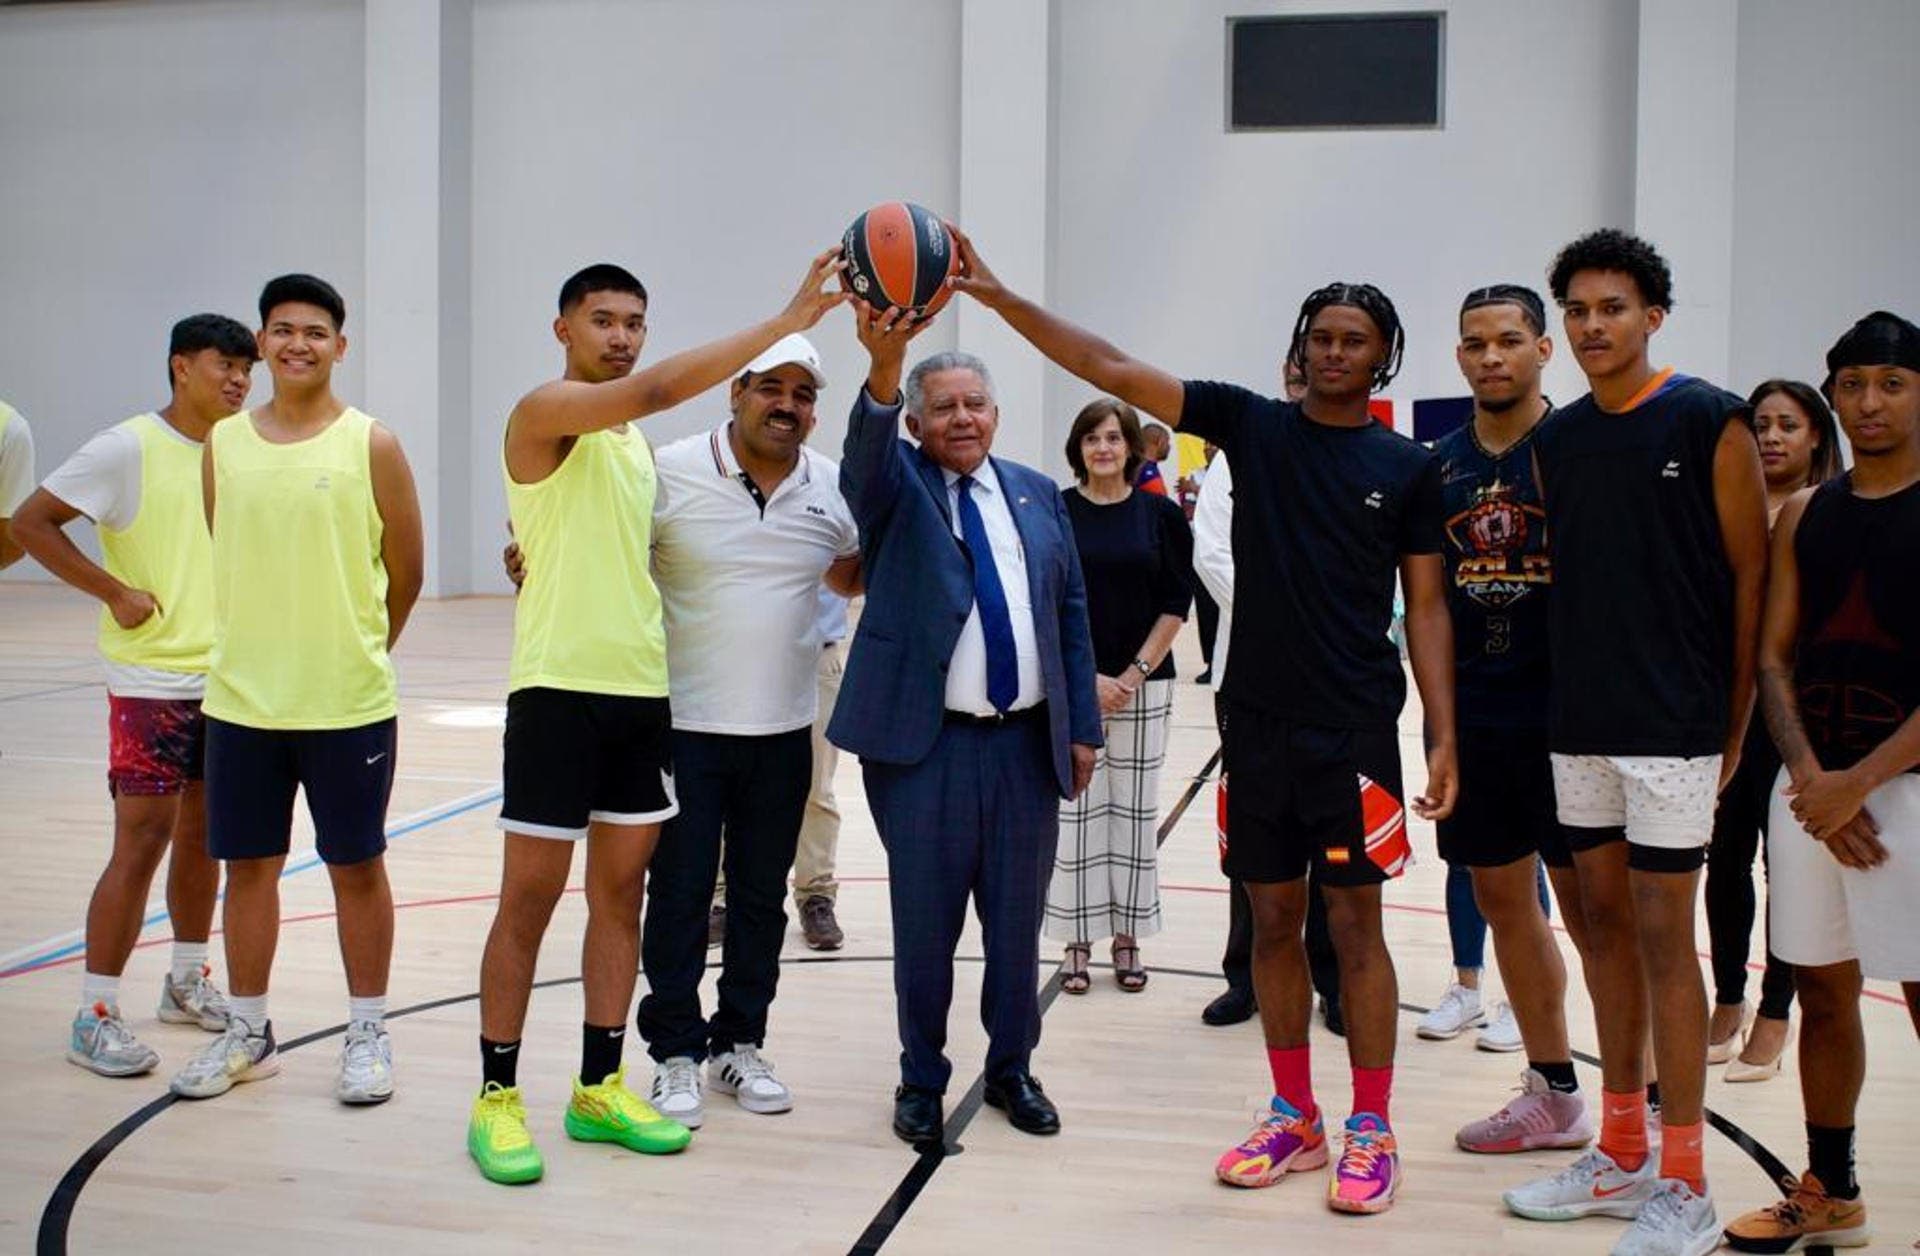 República Dominicana dona 500 uniformes de baloncesto para jóvenes compatriotas en Madrid